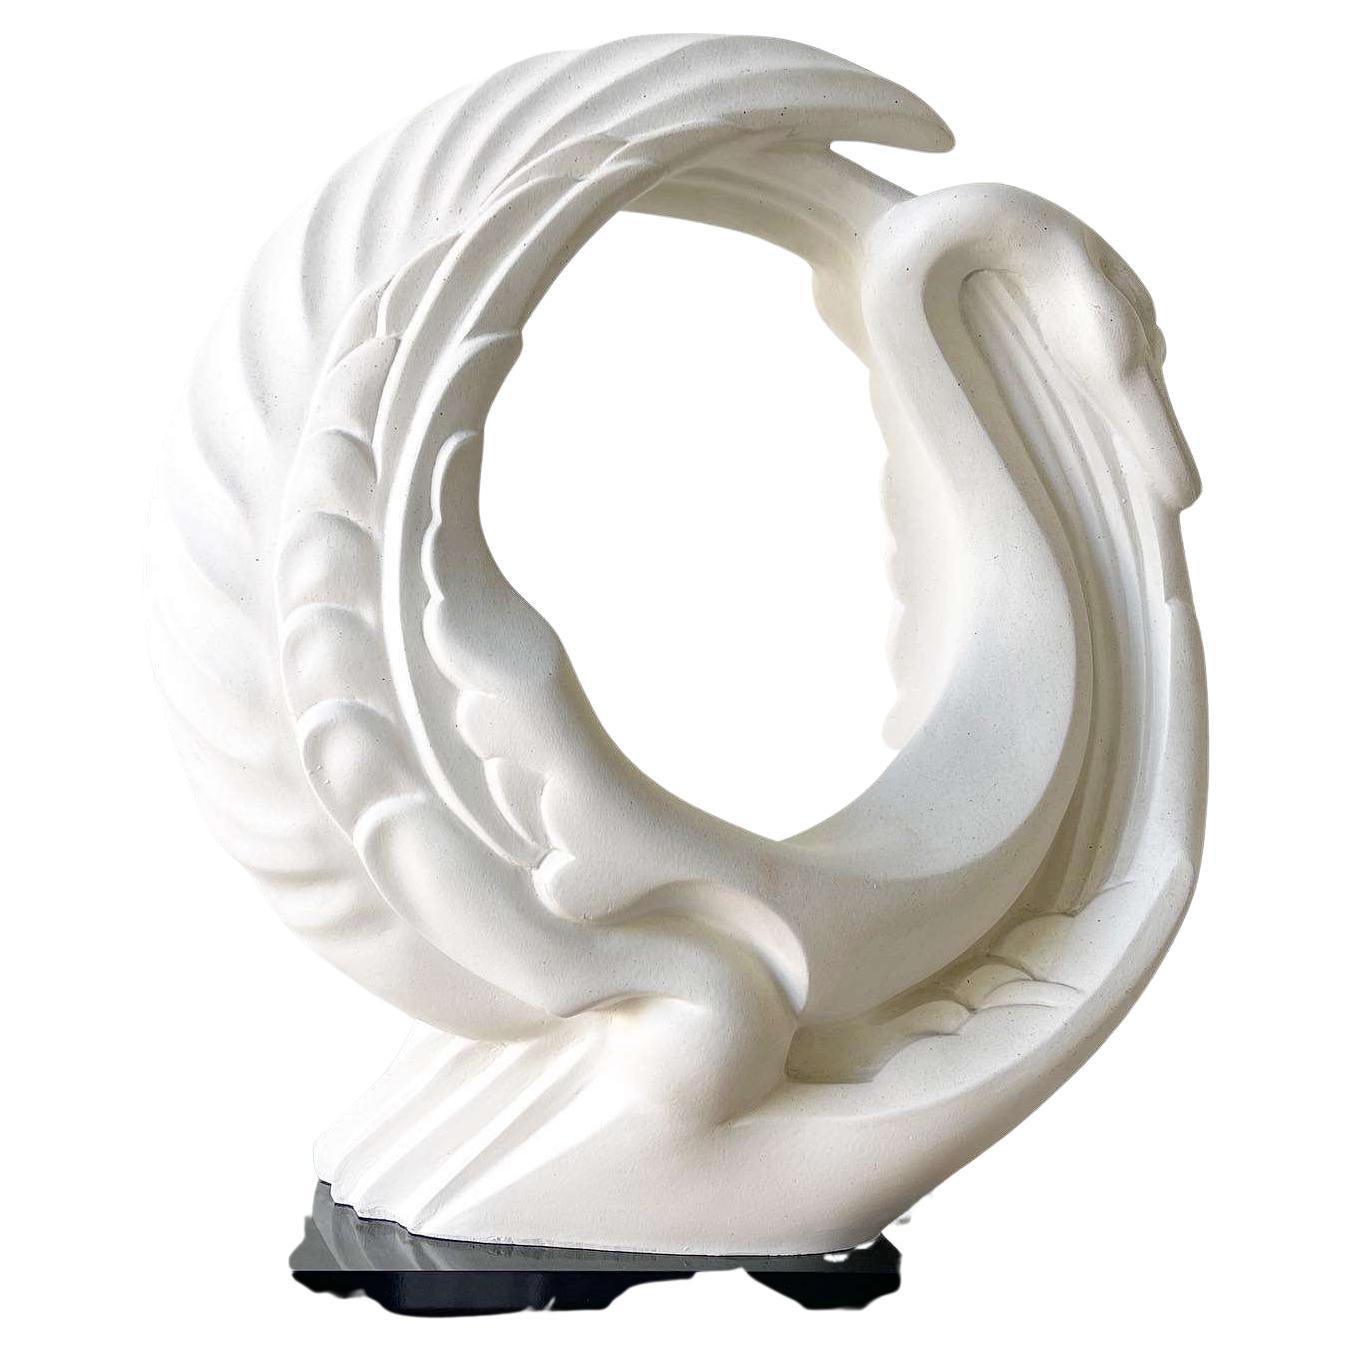 Postmoderne Alexsander Danel Austin Productions Sculpture "Le Cygne